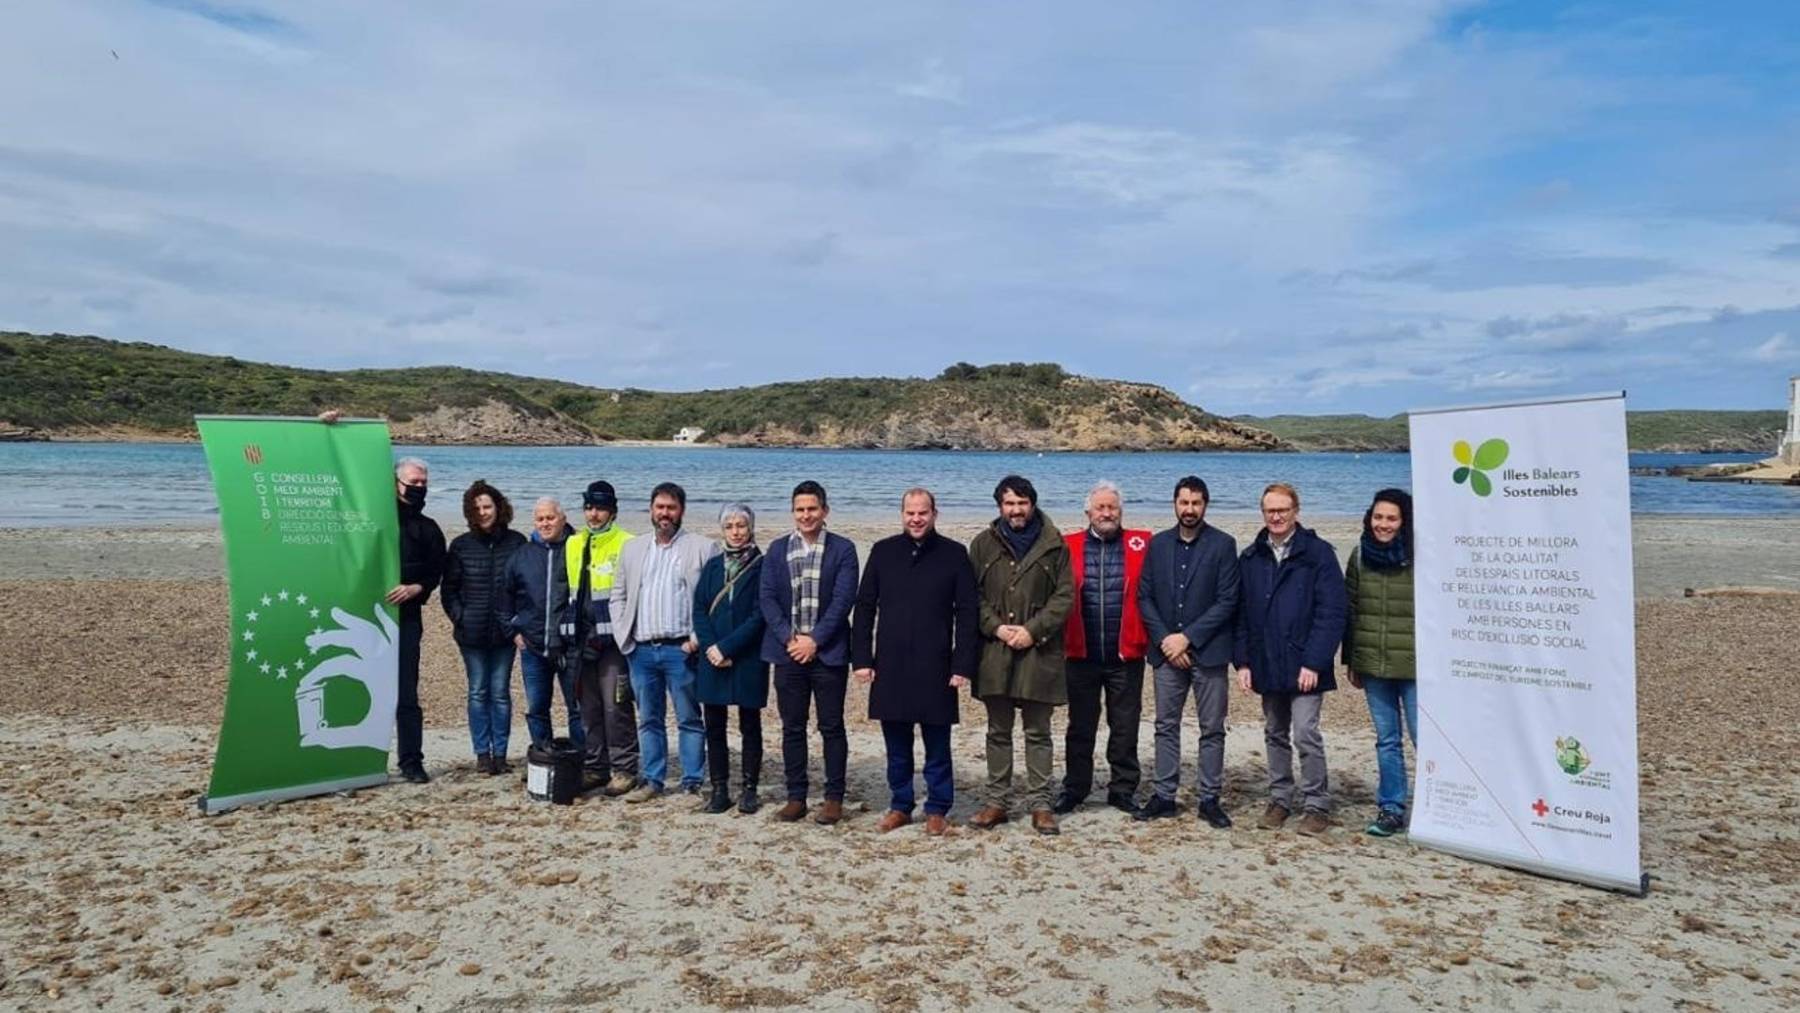 Trabajadores en riesgo de exclusión que forman parte del equipo de limpieza de las zonas naturales de Menorca.